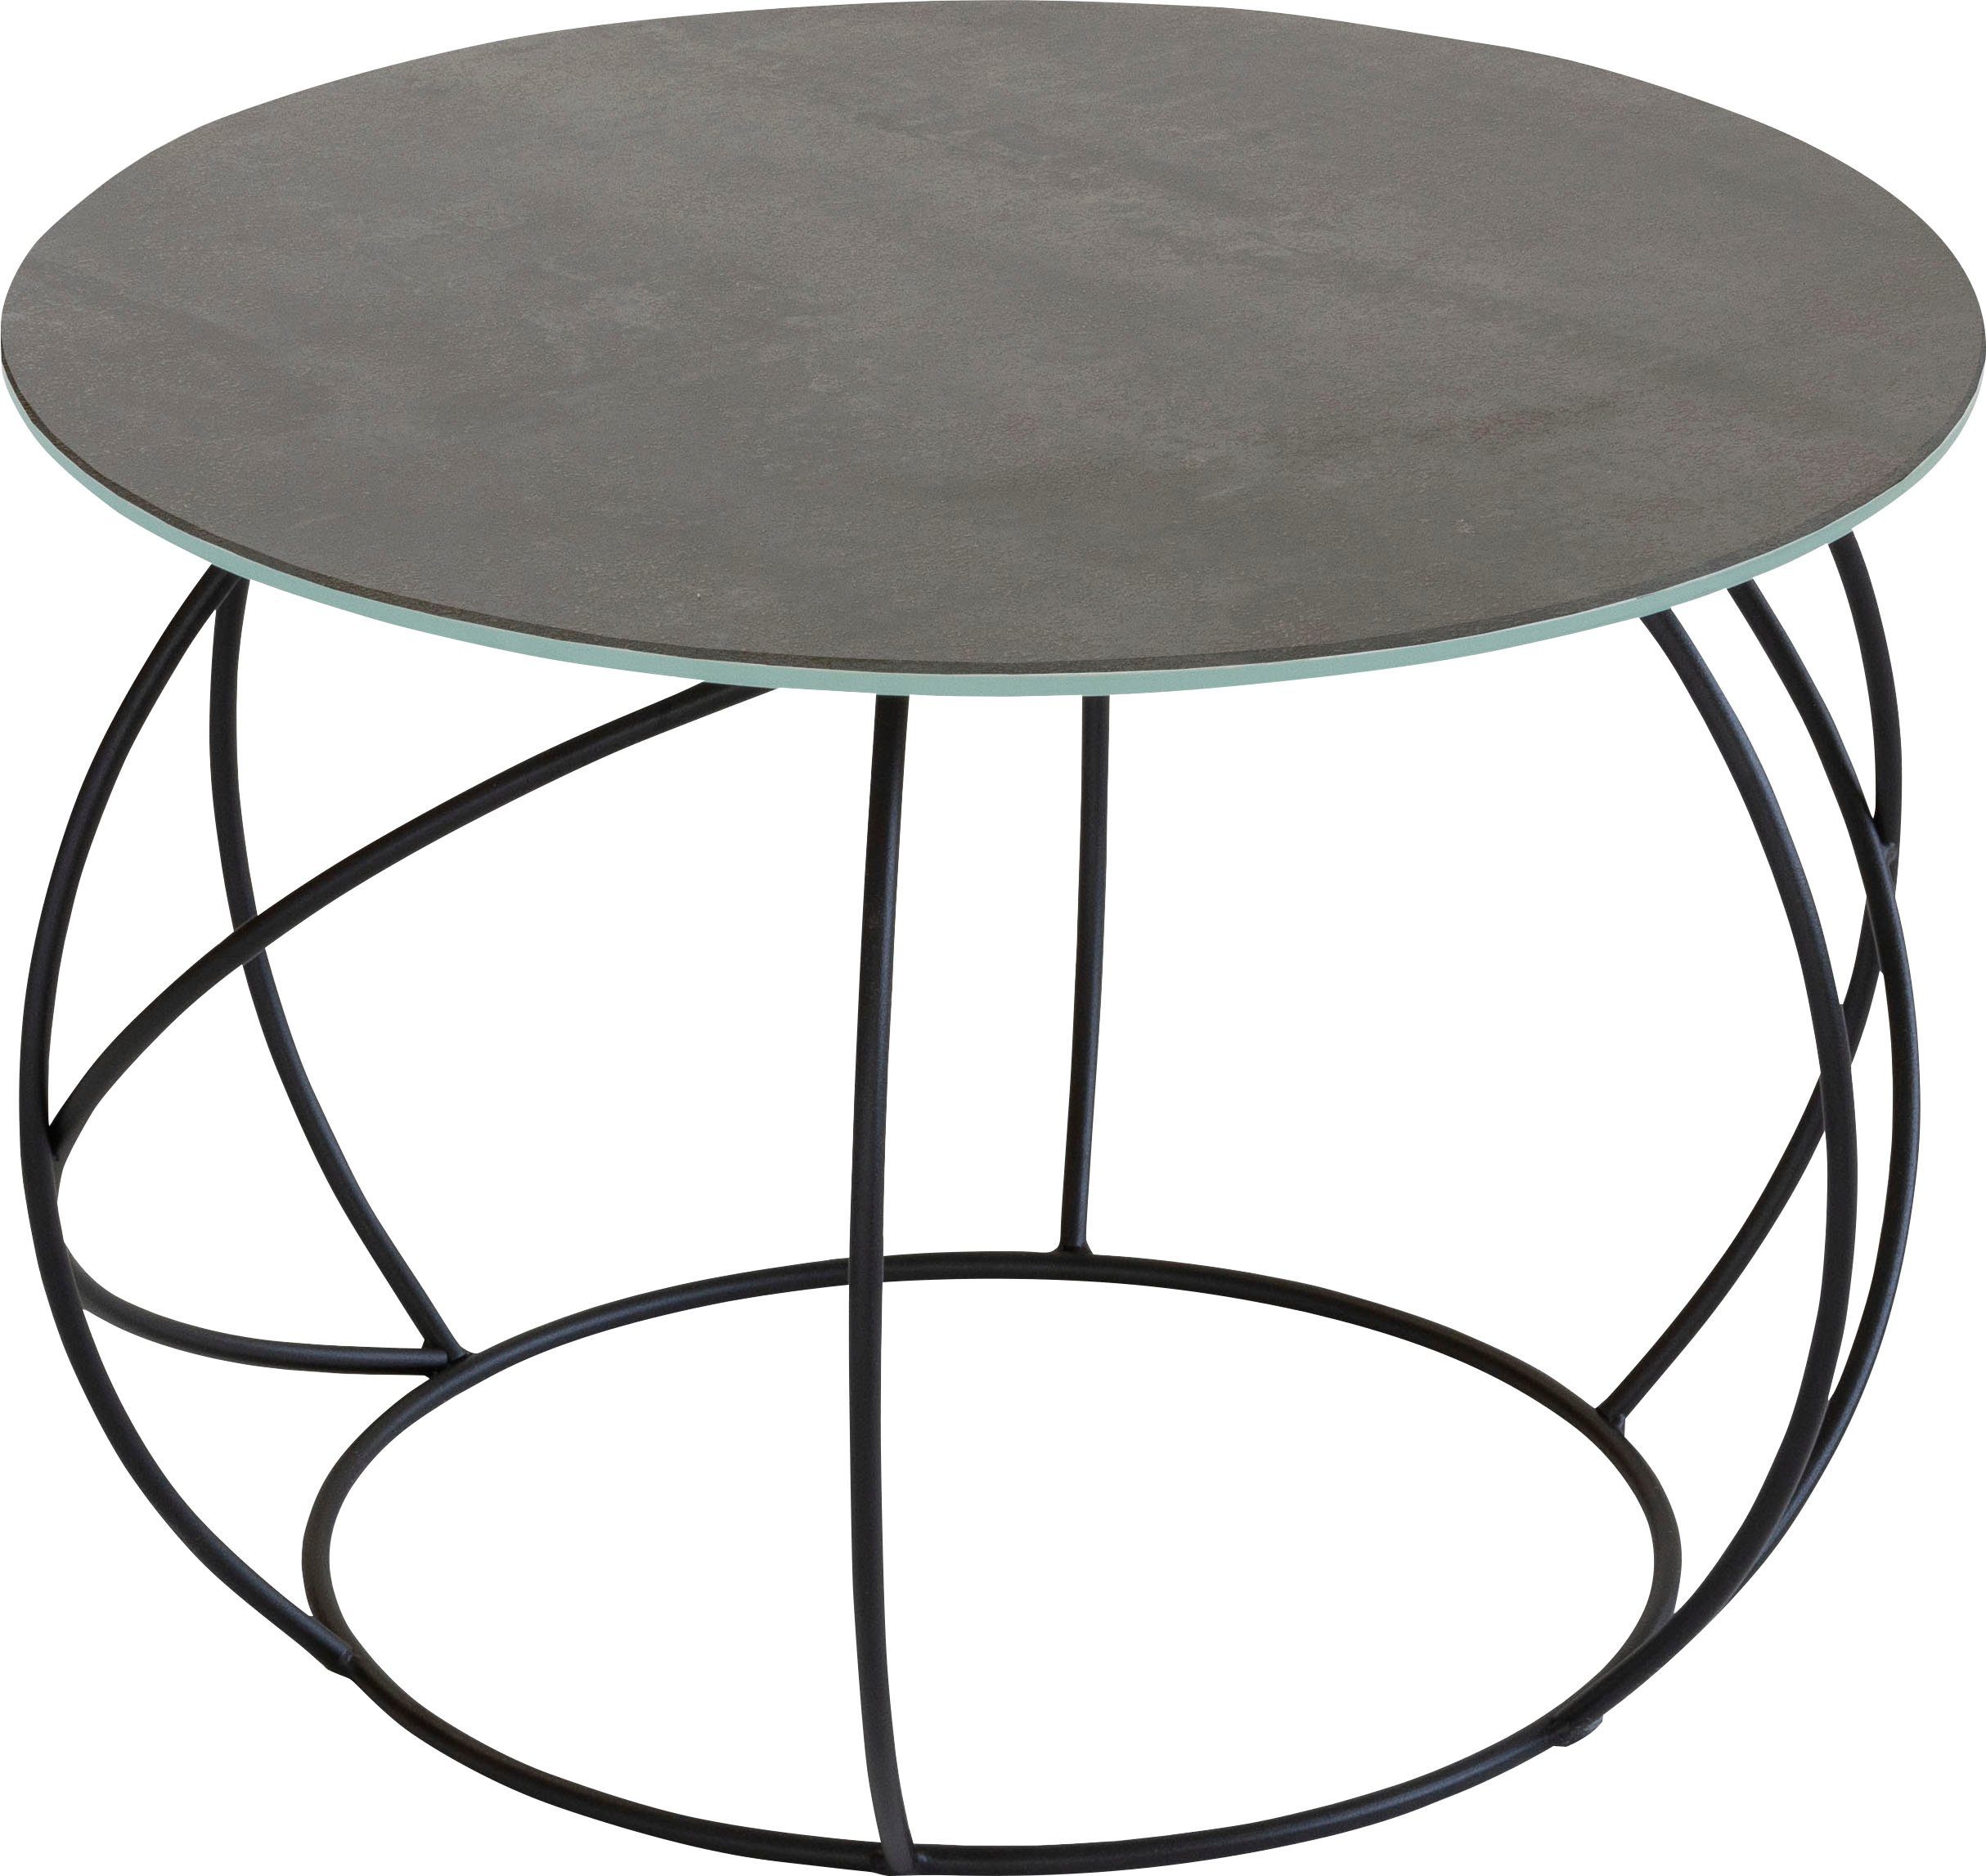 Henke Möbel Beistelltisch, Tischplatte aus hochwertiger Keramik, in zwei  Farben erhältlich